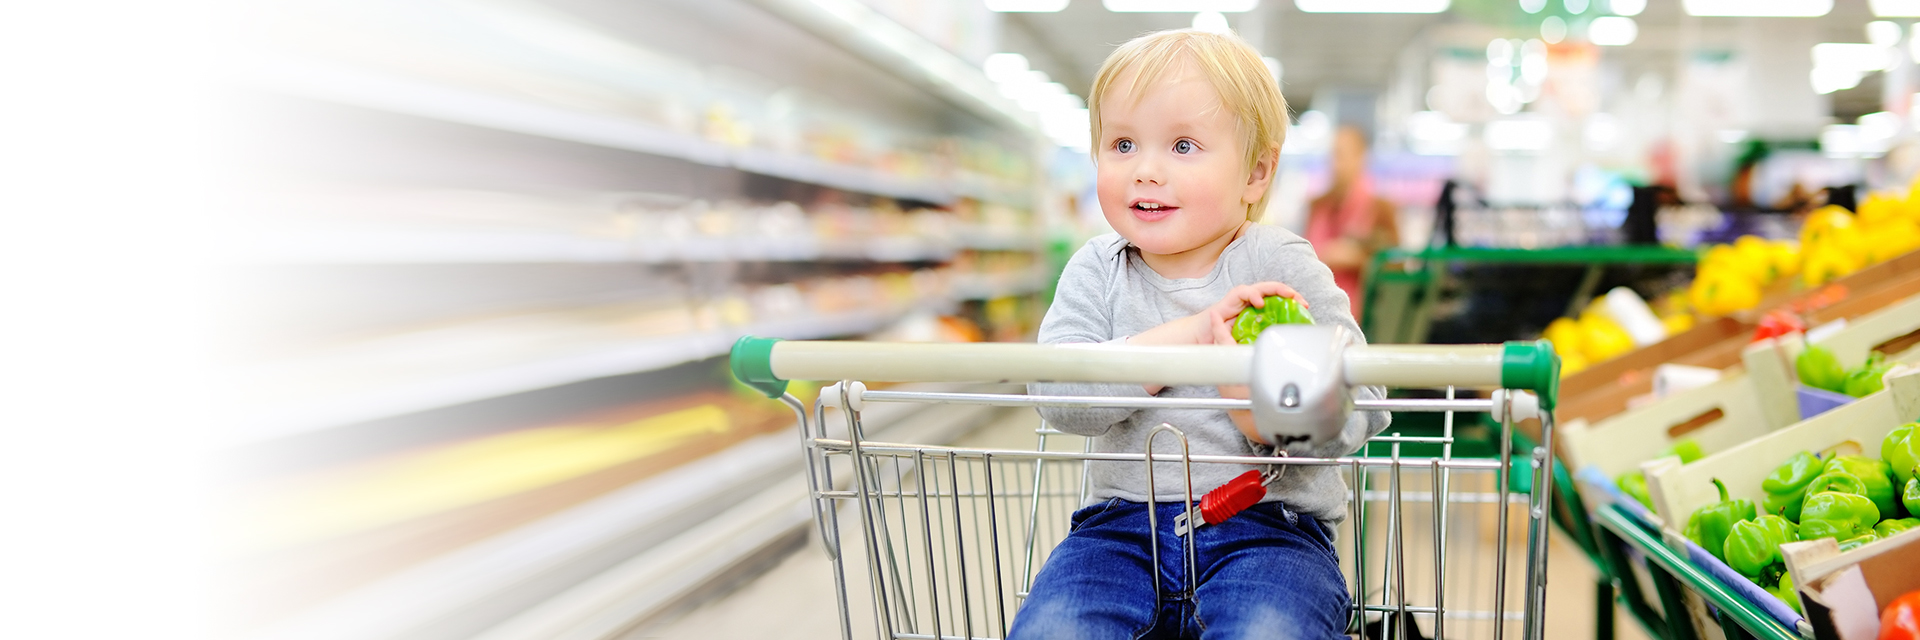 Little boy in a shopping cart